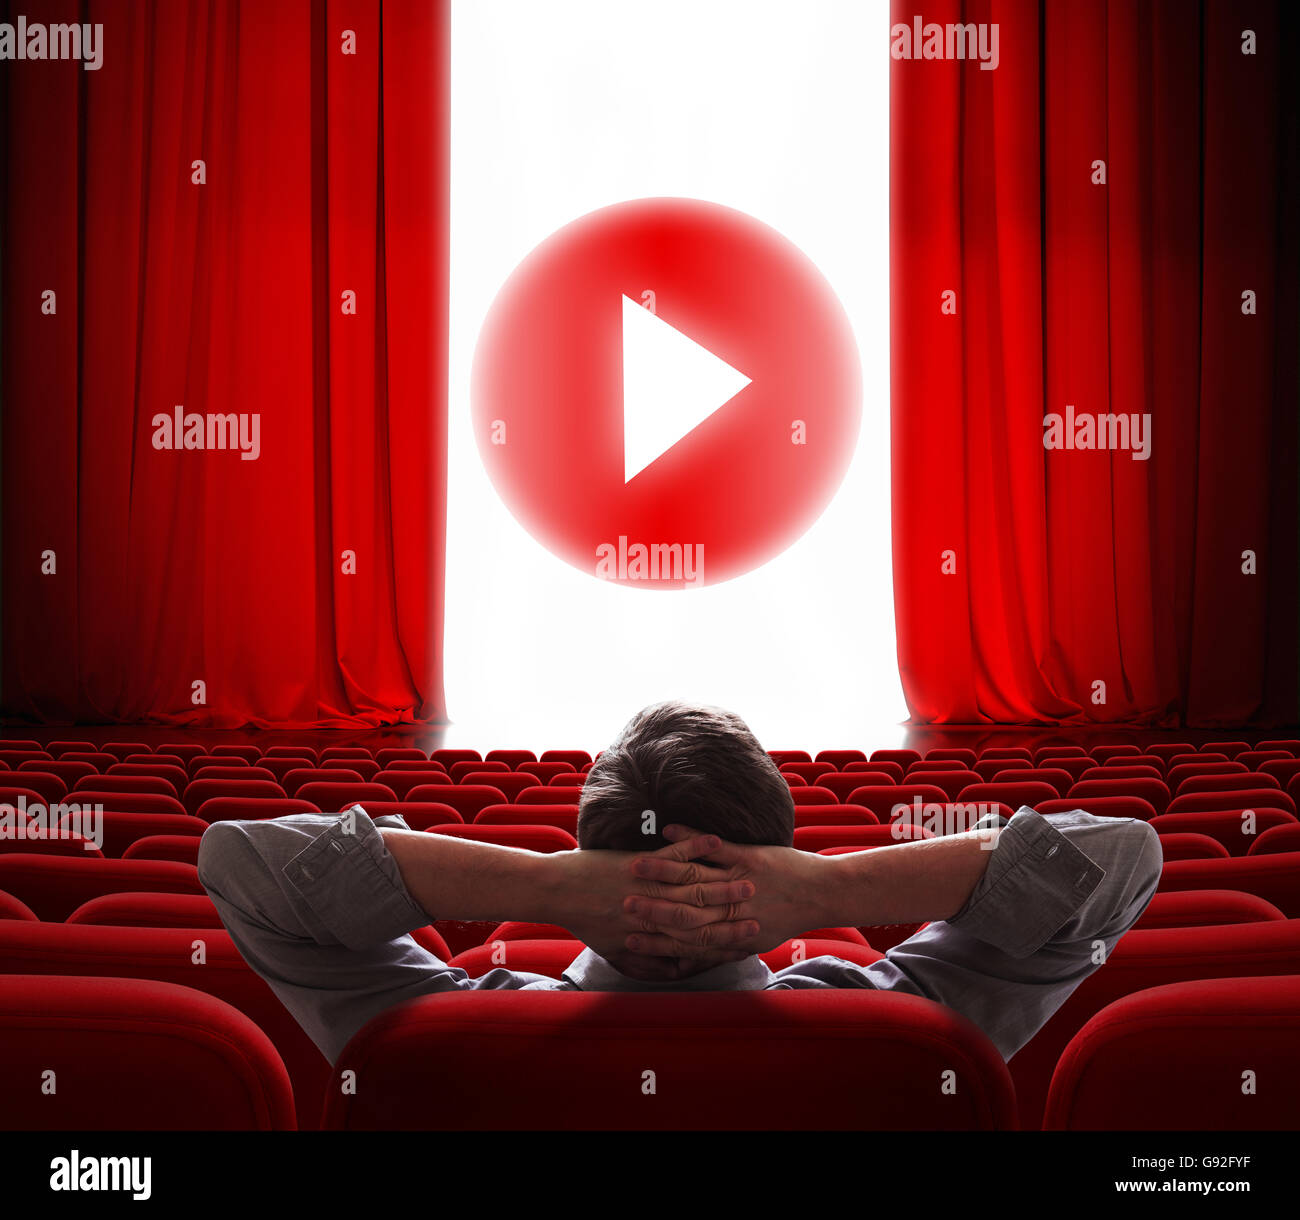 Online-Kinoleinwand mit roten Vorhang zu öffnen und spielen Taste "Medien" in Mitte Stockfoto